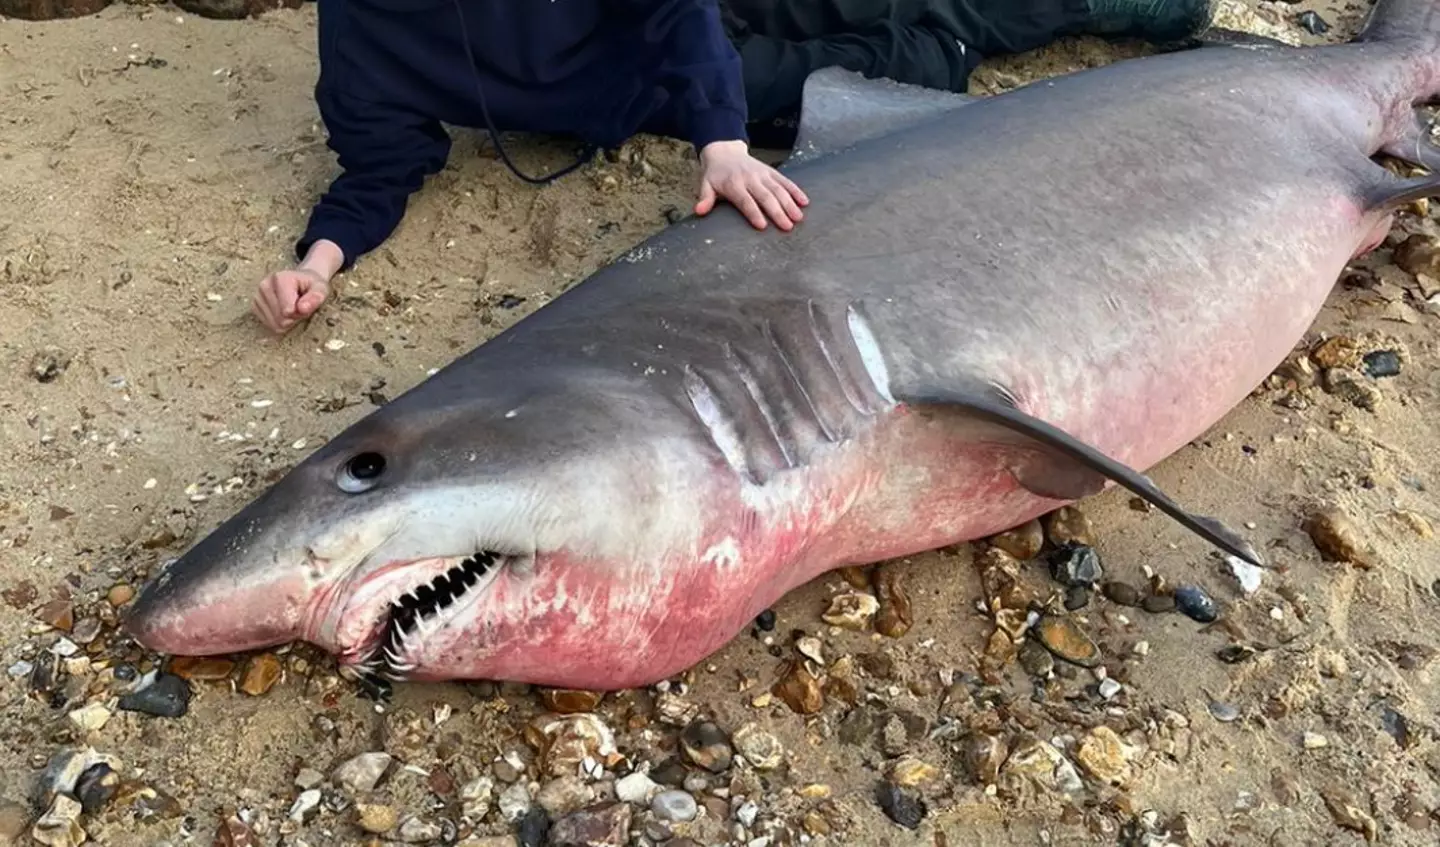 The shark was found on Lepe Beach.